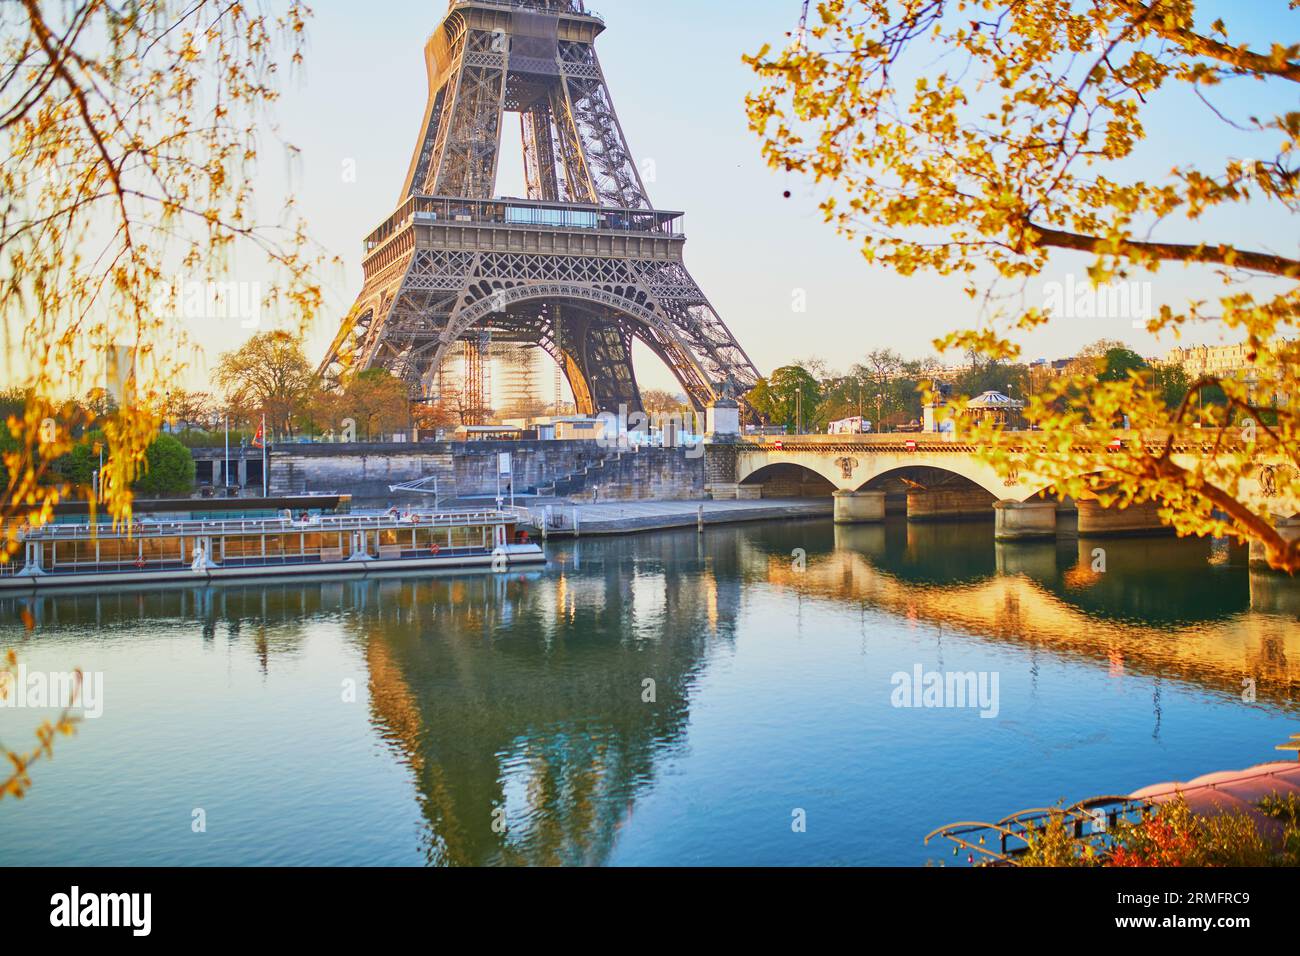 Vue panoramique sur la tour Eiffel et le pont Iéna sur la Seine avec des branches d'arbres avec les premiers feuilles tôt le matin. Printemps à Paris, France Banque D'Images